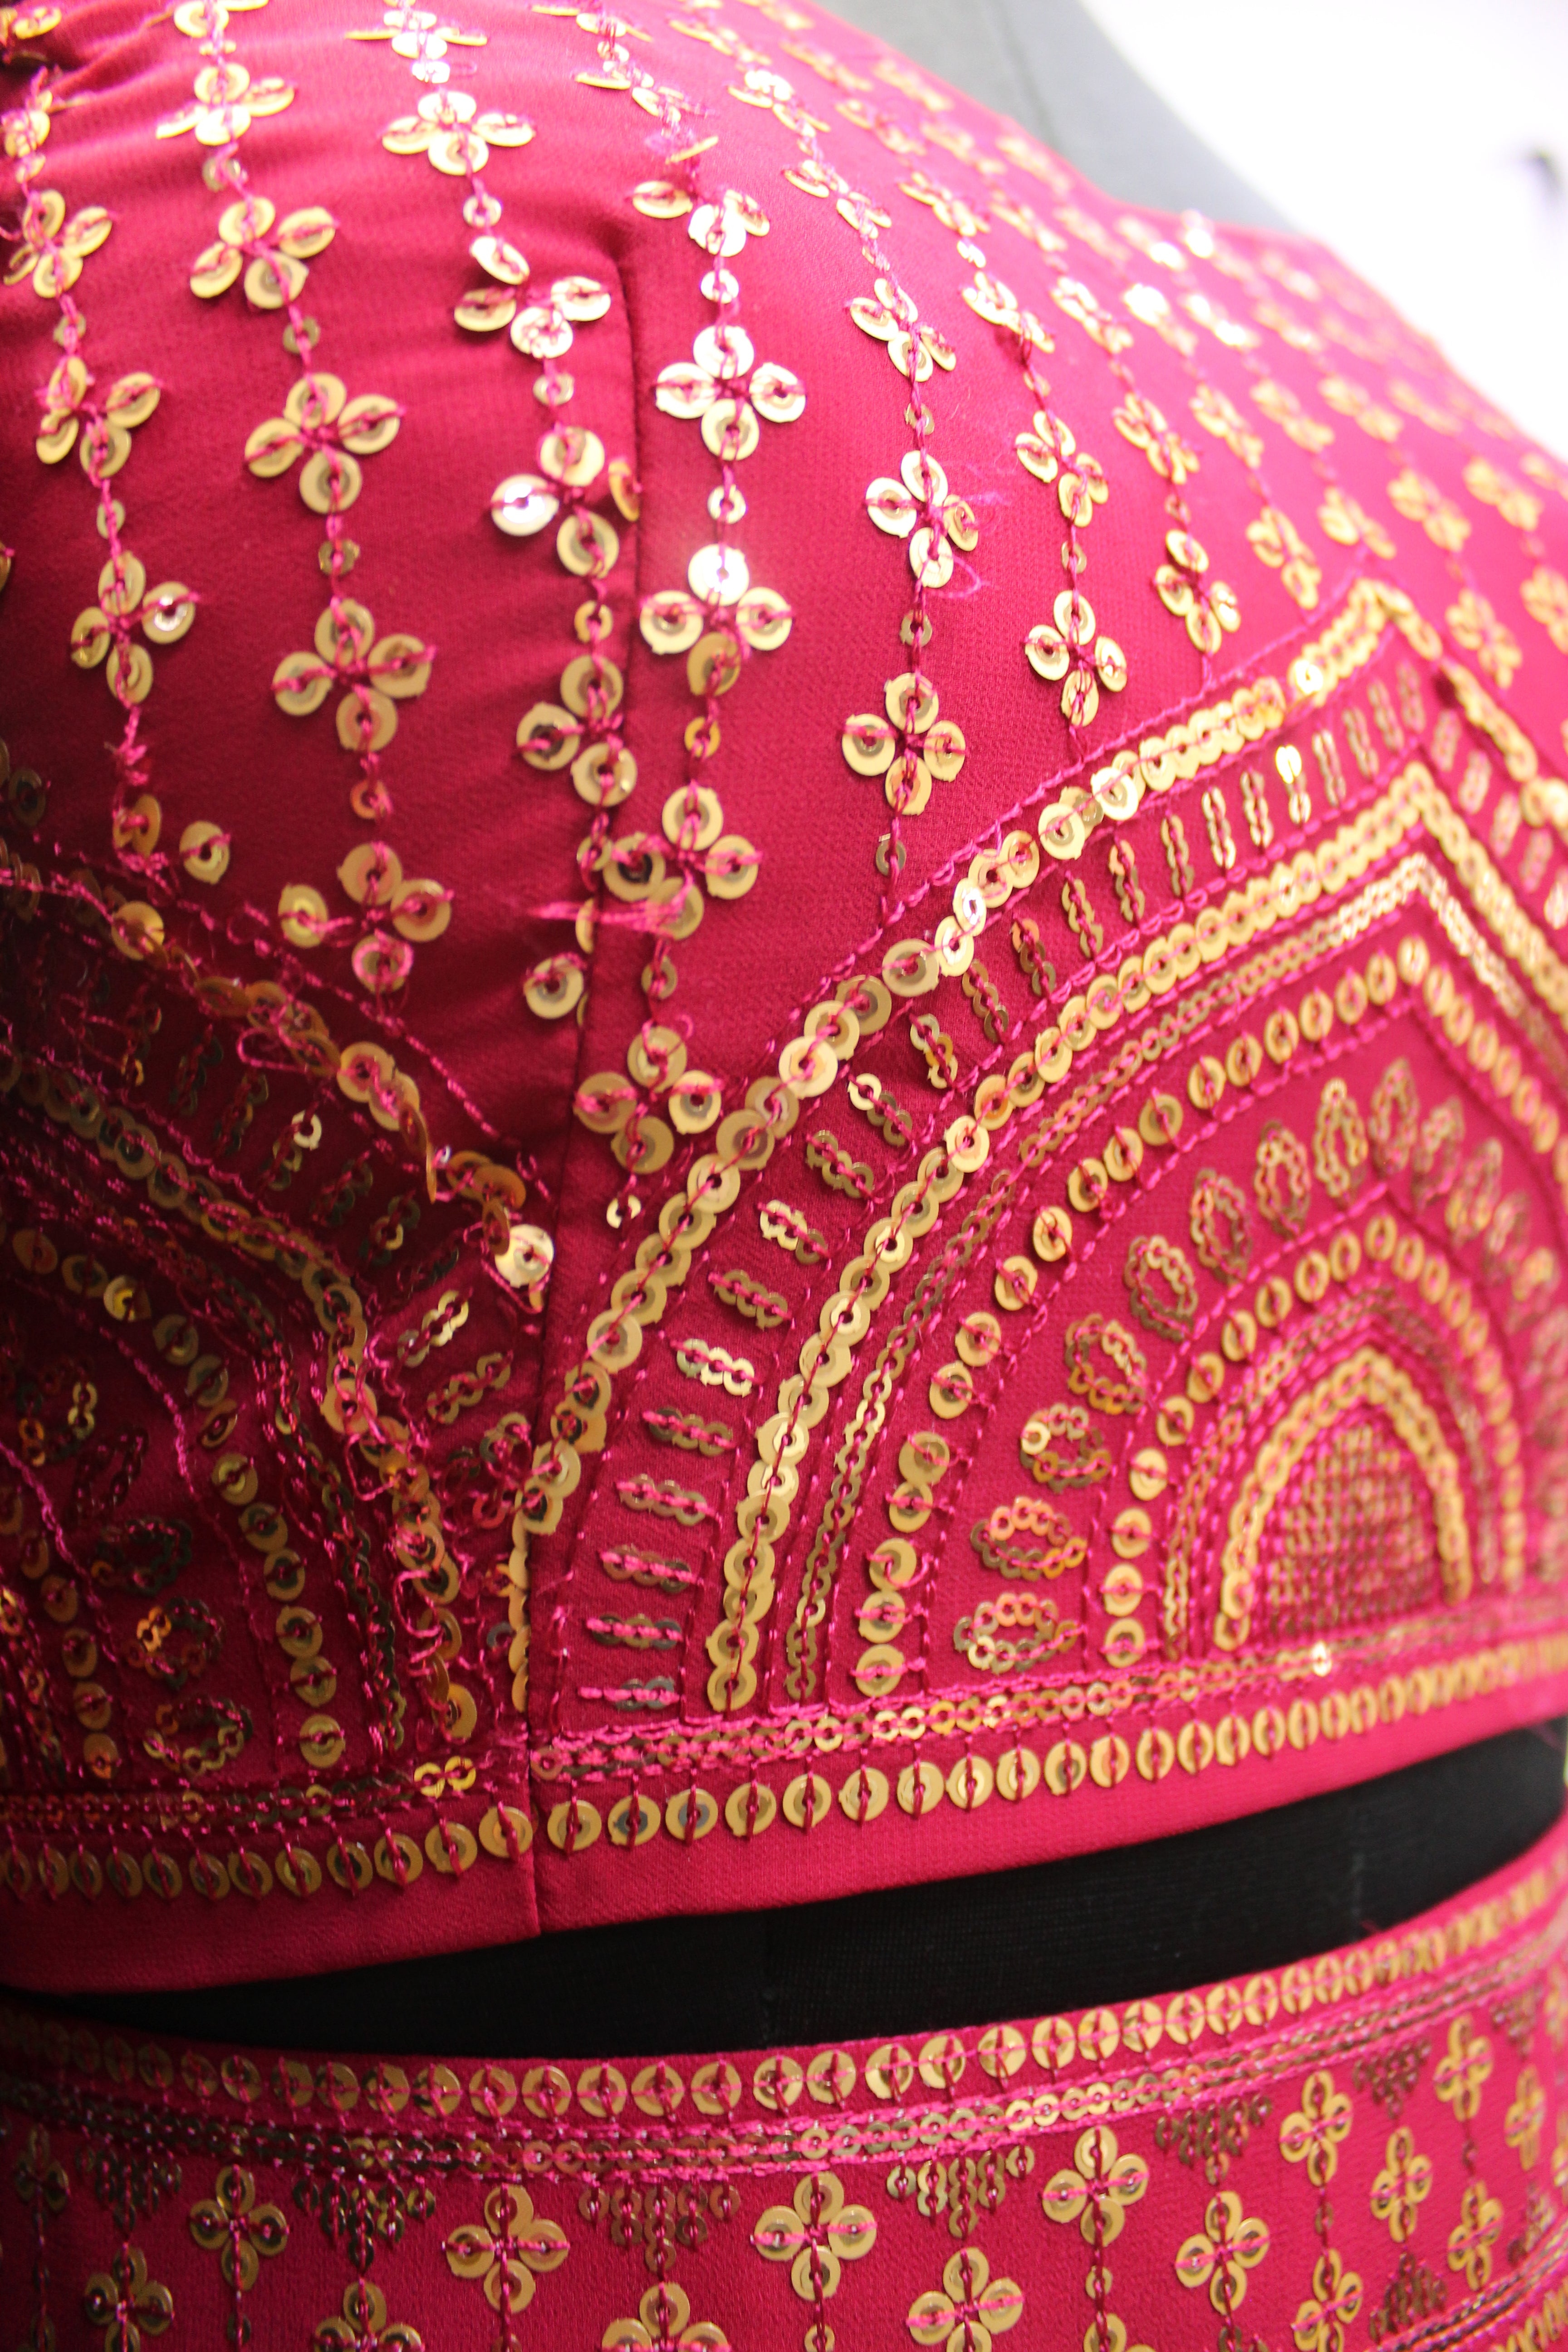 Maggam Work Purple Silk Half Saree | Half saree lehenga, Half saree, Lehenga  saree design